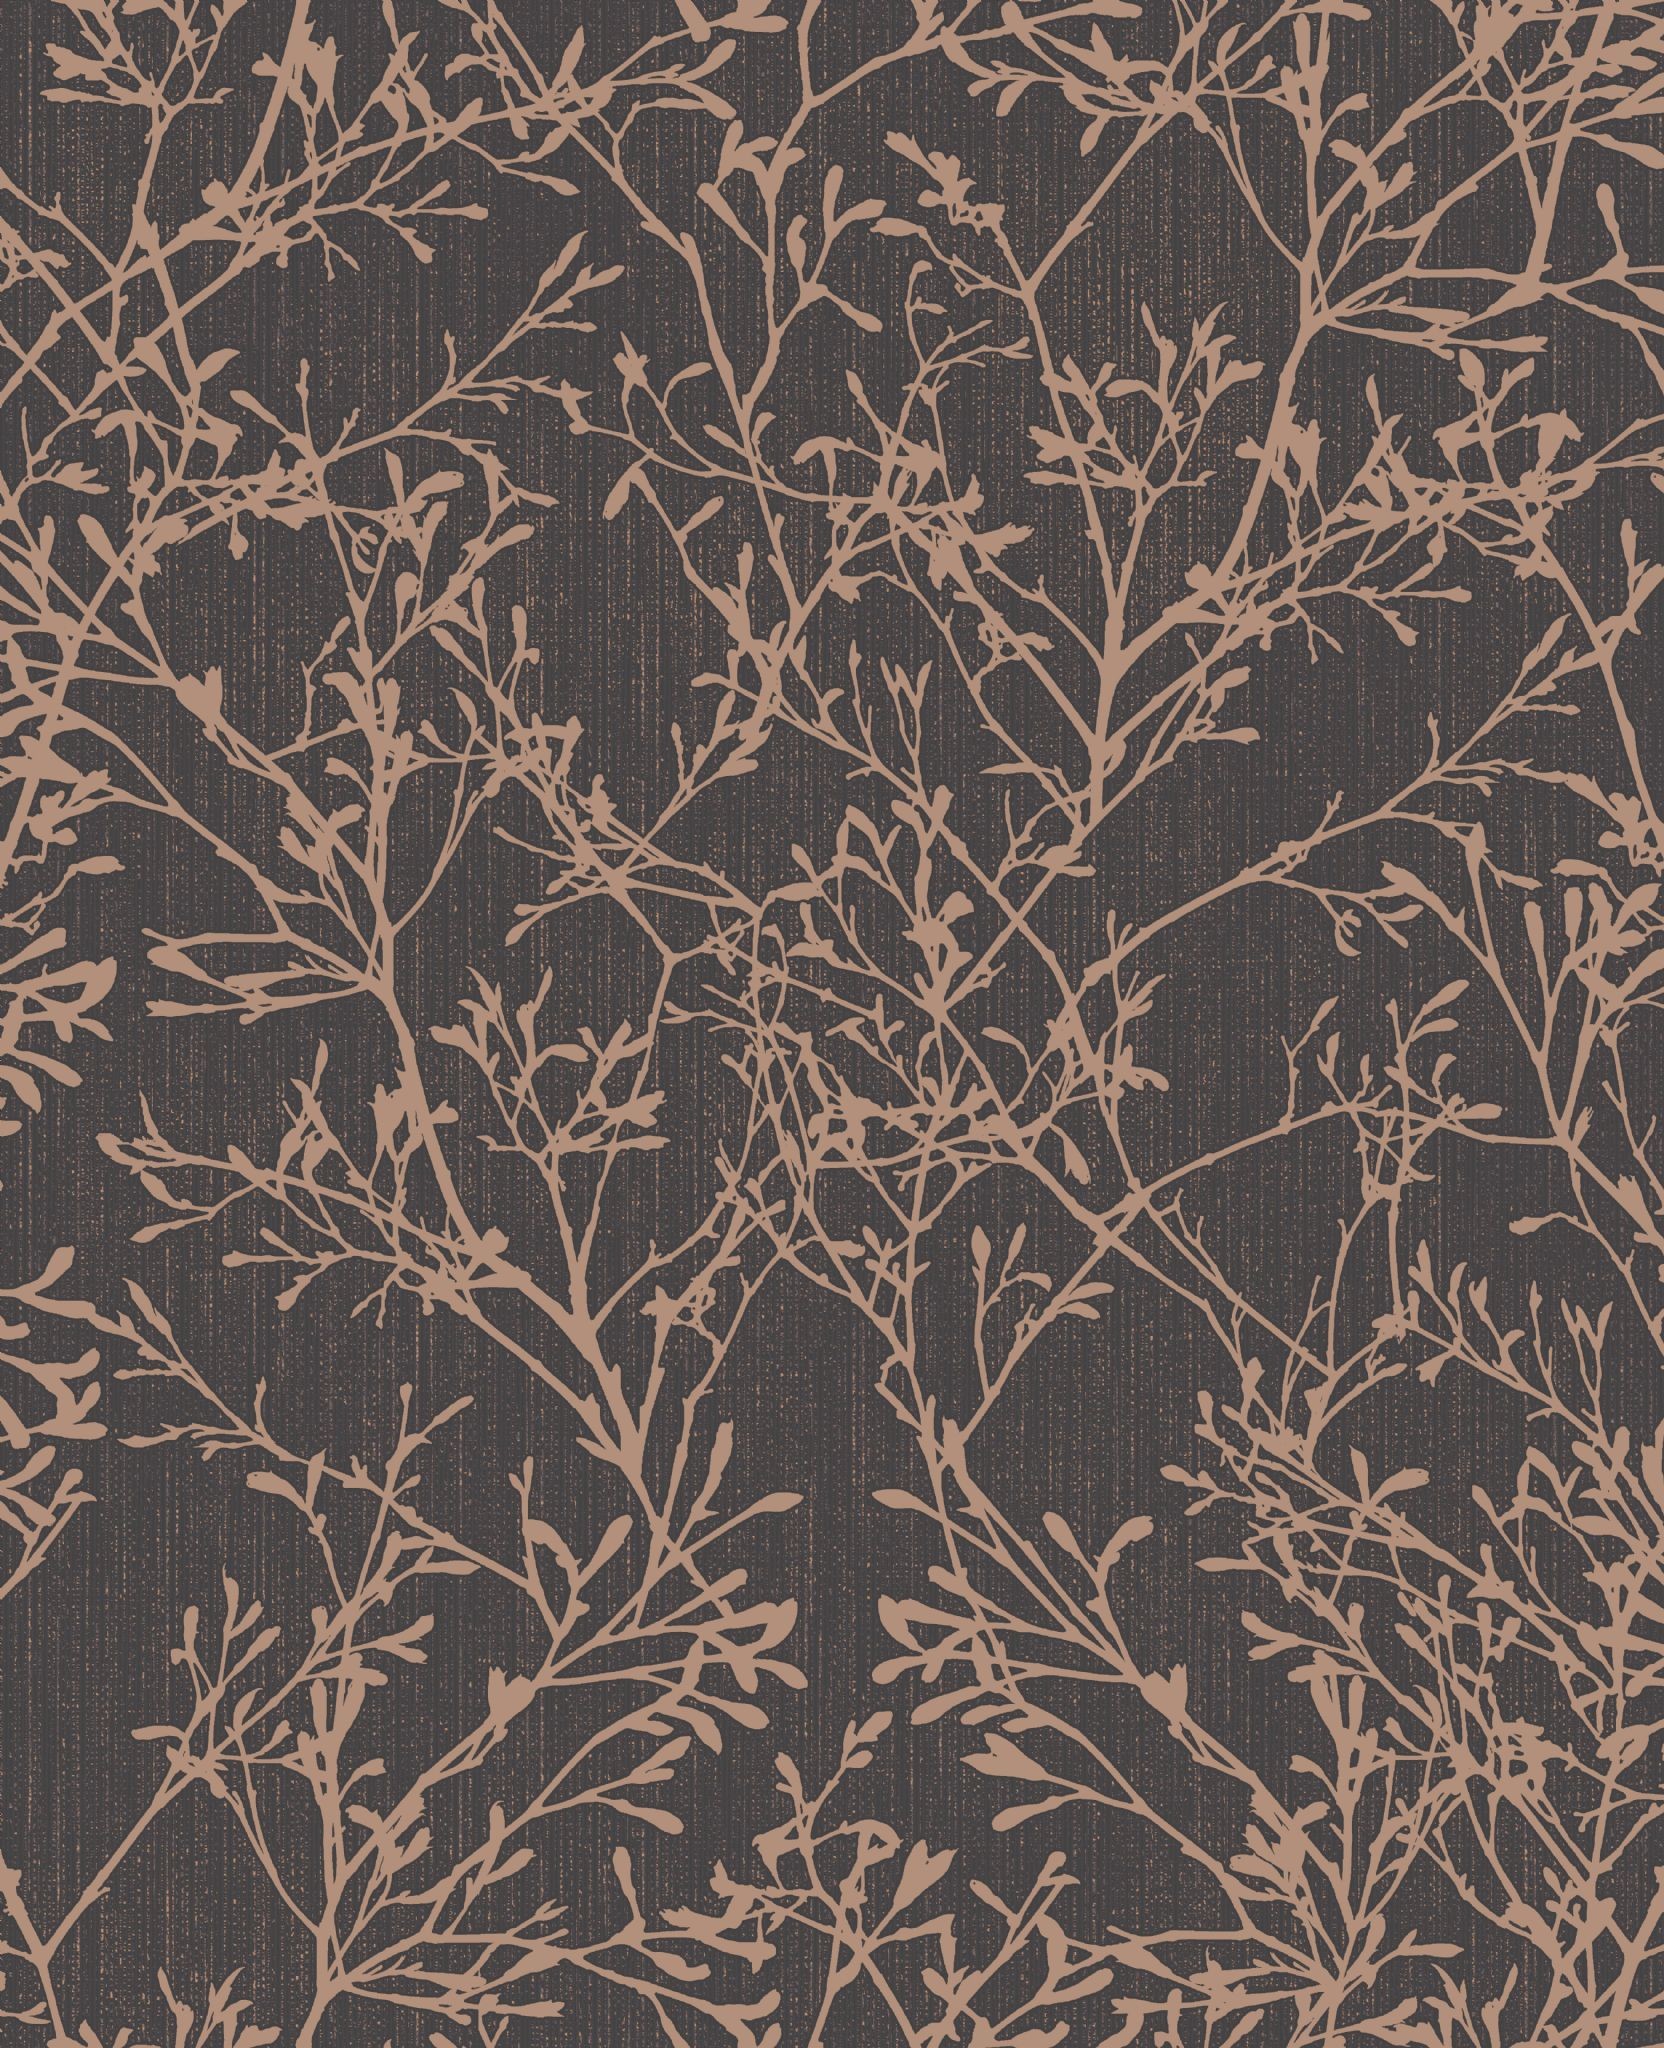 Fine Decor Tranquillity Tree Black/copper Fd41714 Wallpaper - Fine Decor - HD Wallpaper 